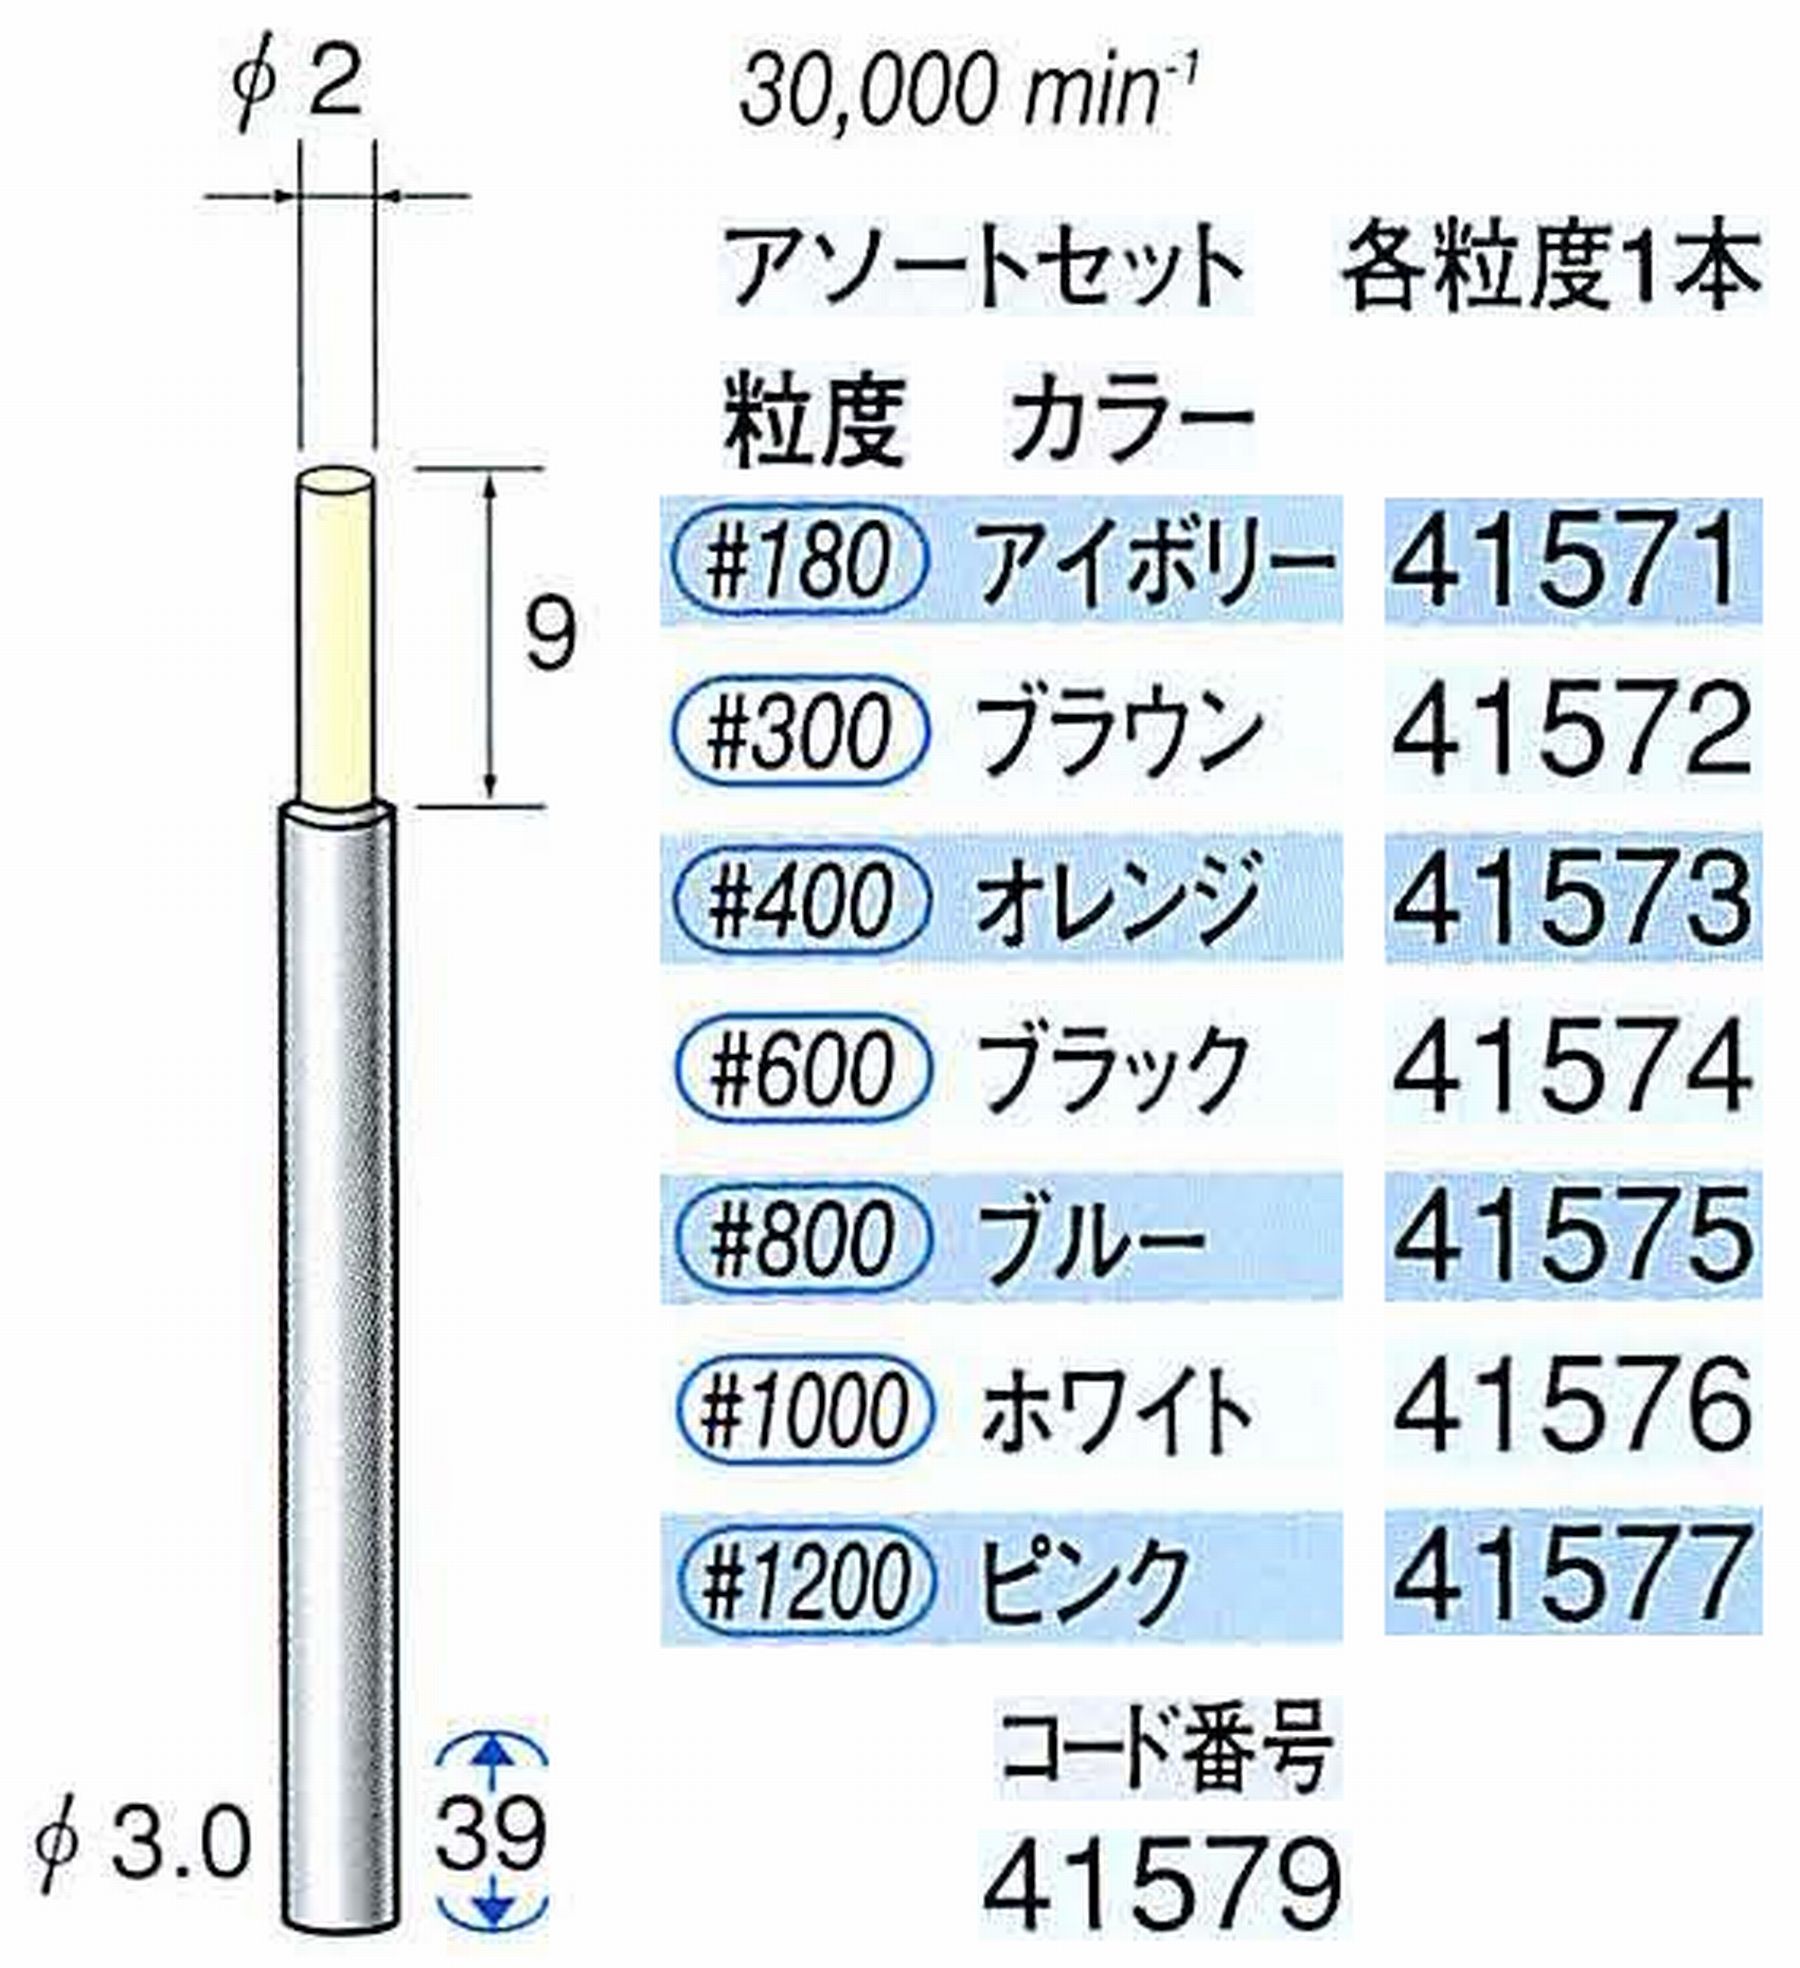 ナカニシ/NAKANISHI セラファイバー精密軸付砥石 アソートセット(各粒度1本) 軸径(シャンク) φ3.0mm 41579